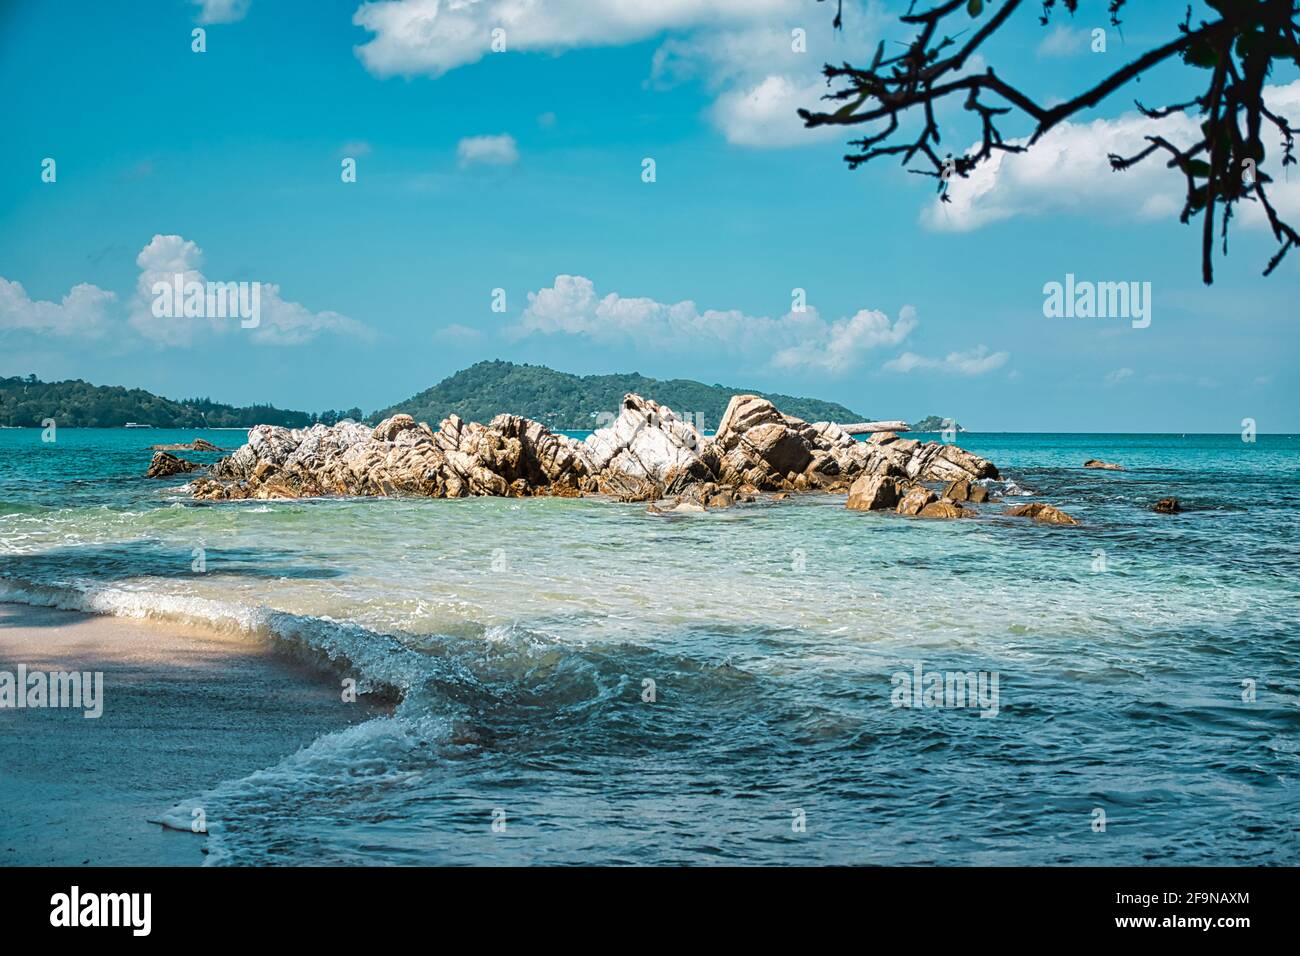 Vide, calme croissant de sable de Kalim Bay, plage avec bleu turquoise eau claire et ciel nuageux cirrus à Phuket, Thaïlande Banque D'Images